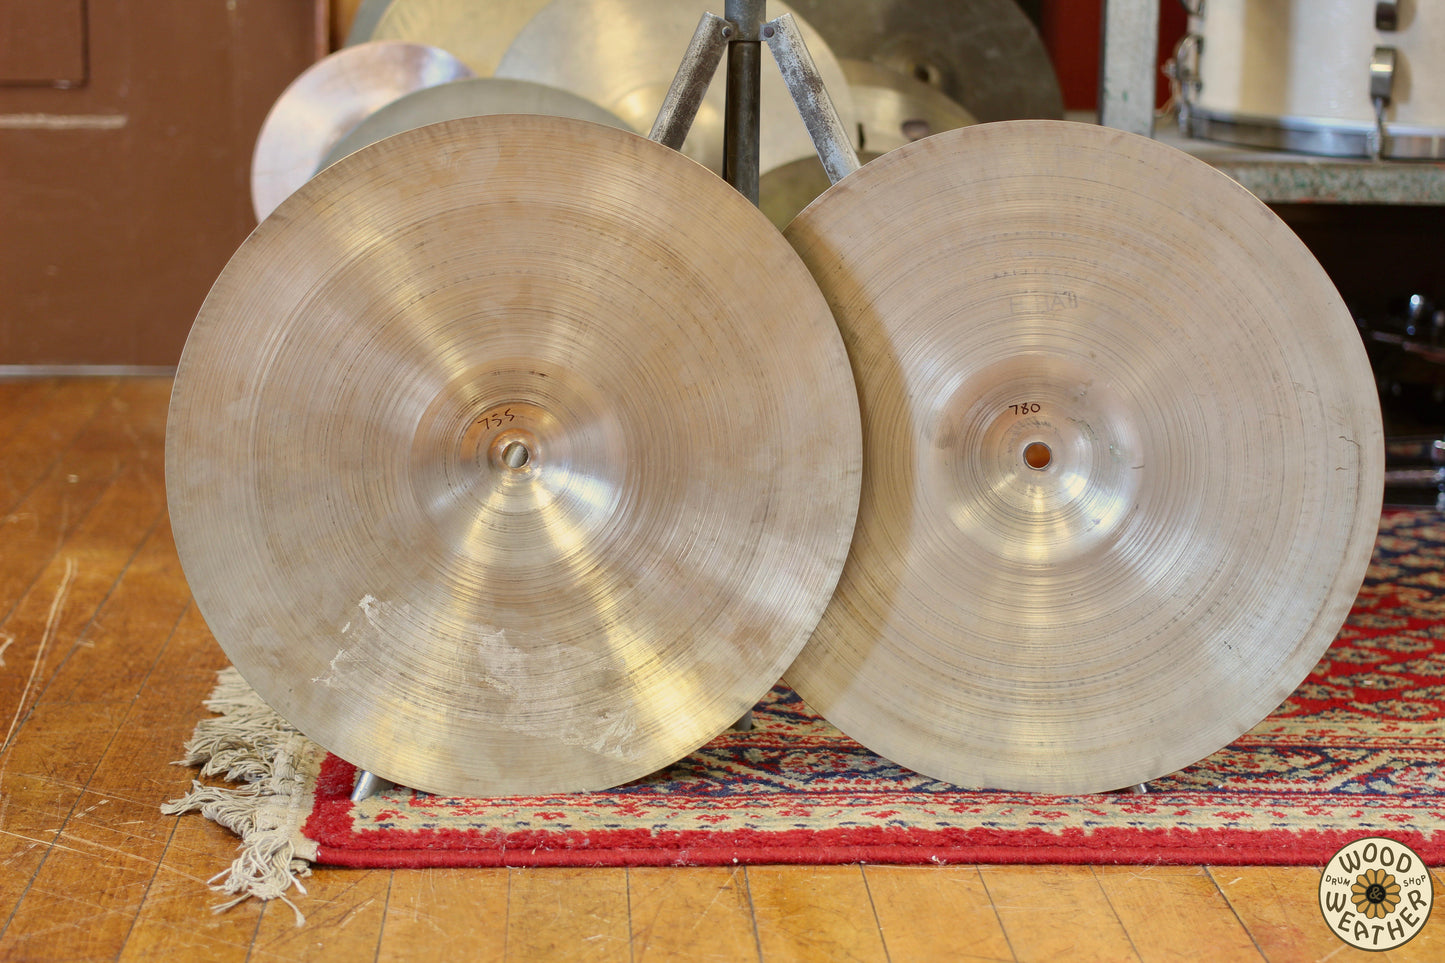 1960s A. Zildjian 14" Medium Hi-Hat Cymbals 755/780g